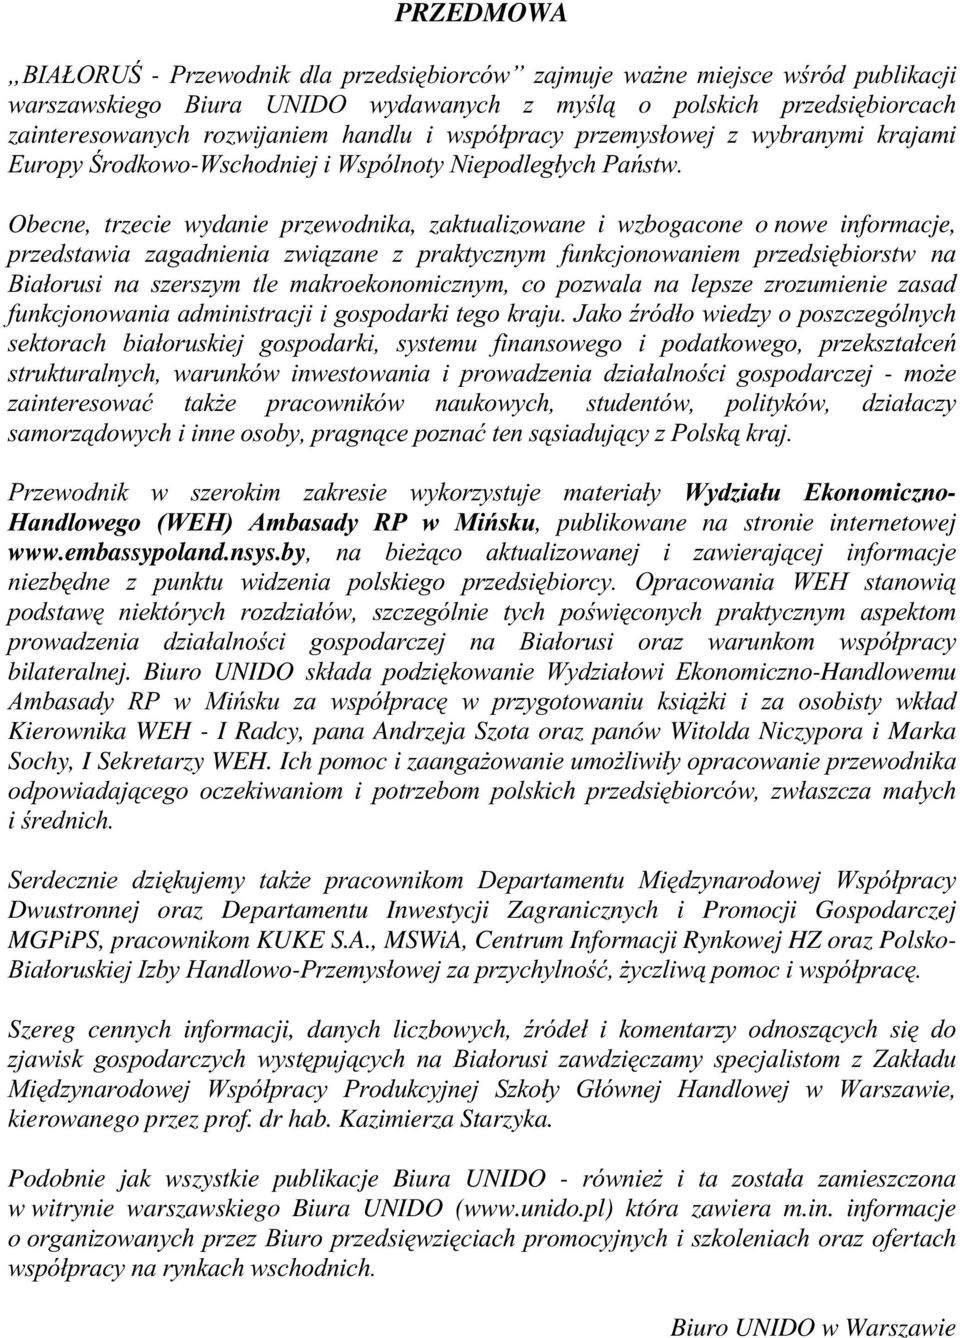 Obecne, trzecie wydanie przewodnika, zaktualizowane i wzbogacone o nowe informacje, przedstawia zagadnienia związane z praktycznym funkcjonowaniem przedsiębiorstw na Białorusi na szerszym tle